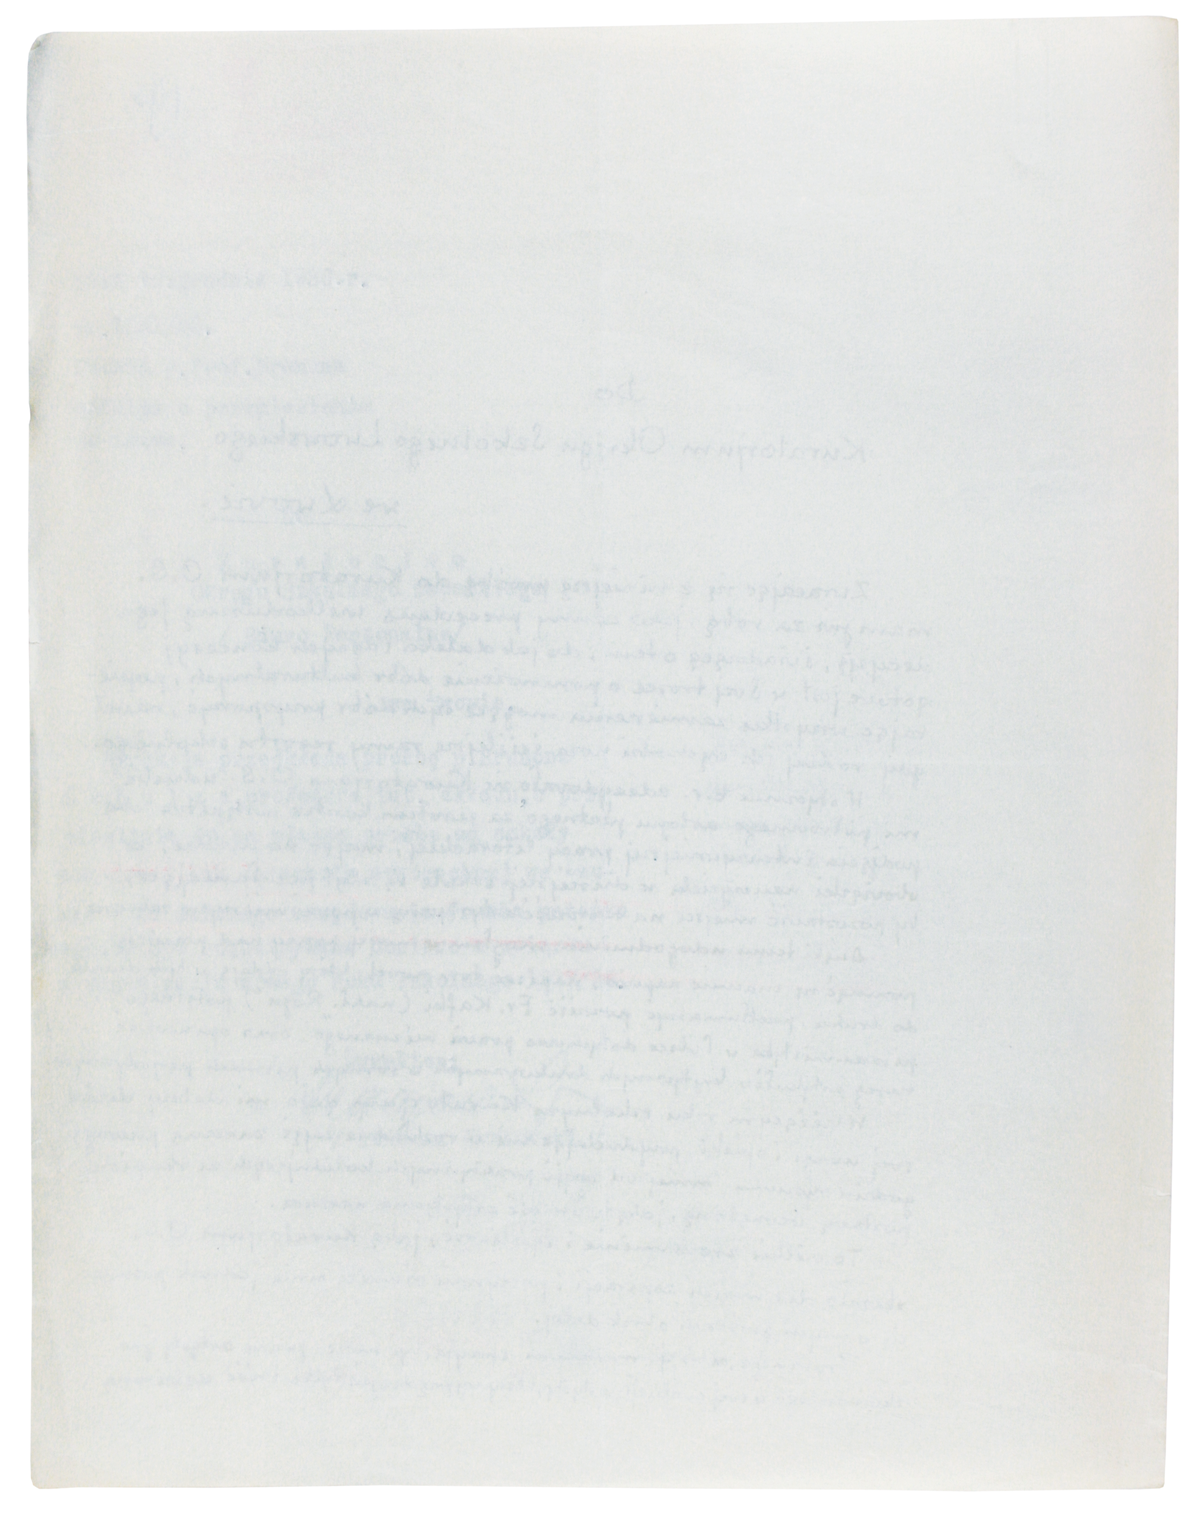 List Brunona Schulza do Kuratorium Okręgu Szkolnego Lwowskiego z 30 listopada 1936-2